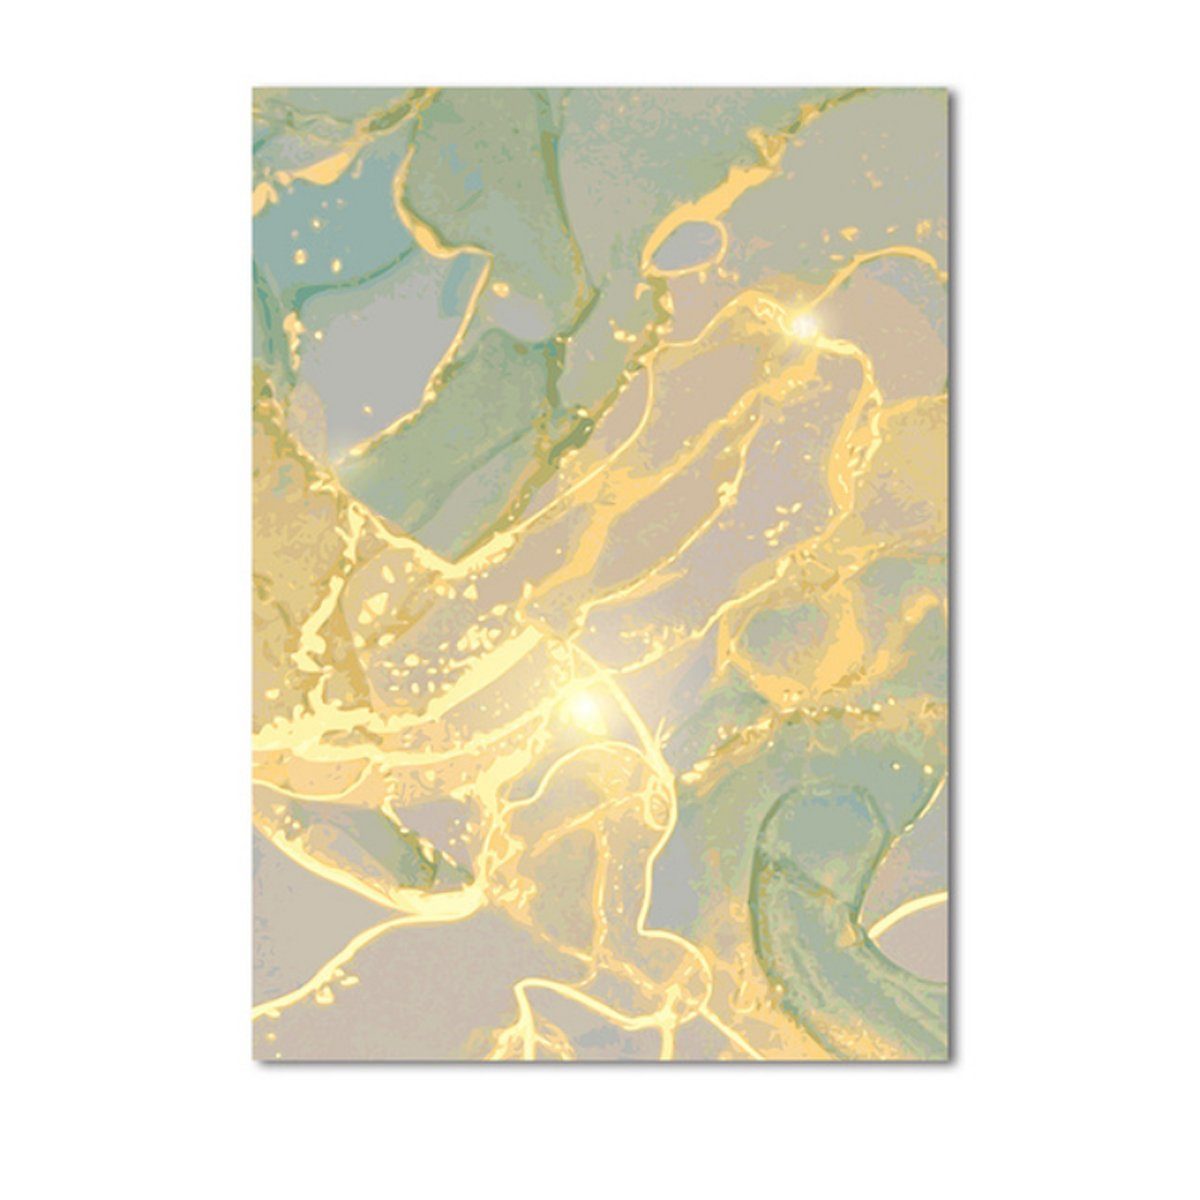 TPFLiving Kunstdruck (OHNE RAHMEN) Poster - Leinwand - Wandbild, Abstrakte Strukturen - Wanddeko Wohnzimmer - (13 verschiedene Größen zur Auswahl - Auch im günstigen 3-er Set), Farben: Gold, Gelb, Grün, Grau - Größe: 30x40cm